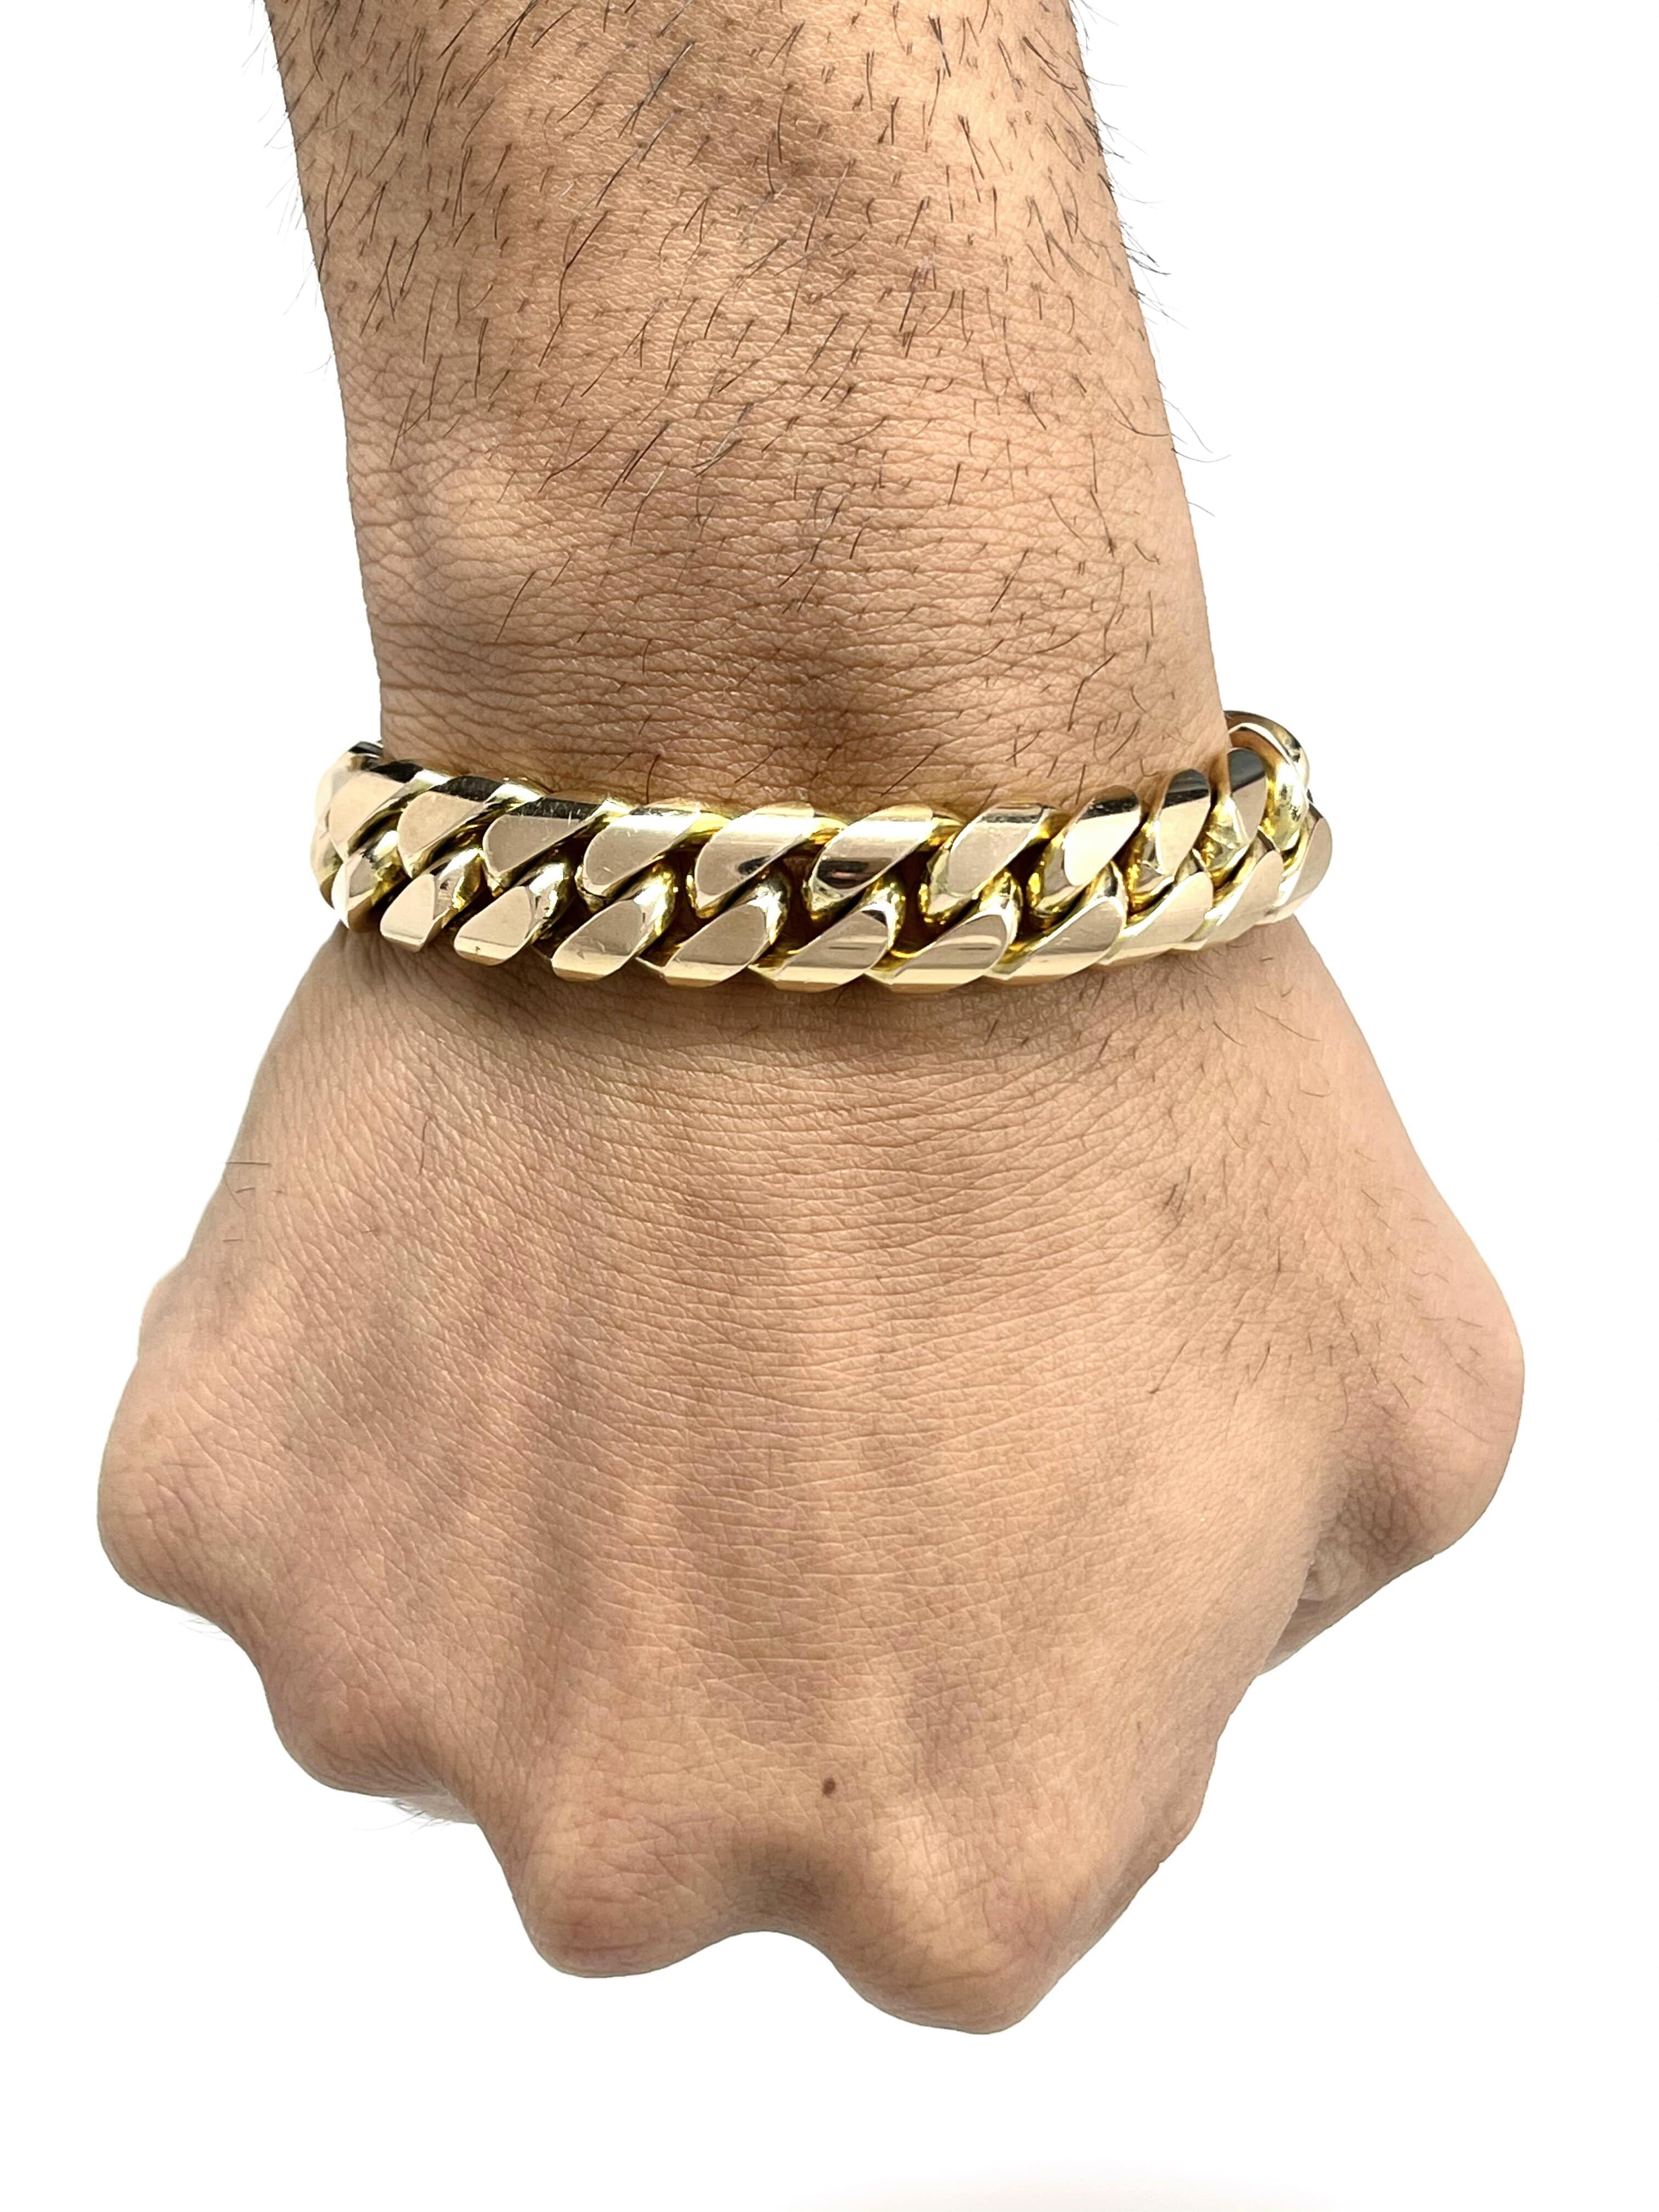 CUBIC ZIRCONIA 10k YELLOW GOLD CUBAN LINK BRACELET – Speak Easy Jewelry